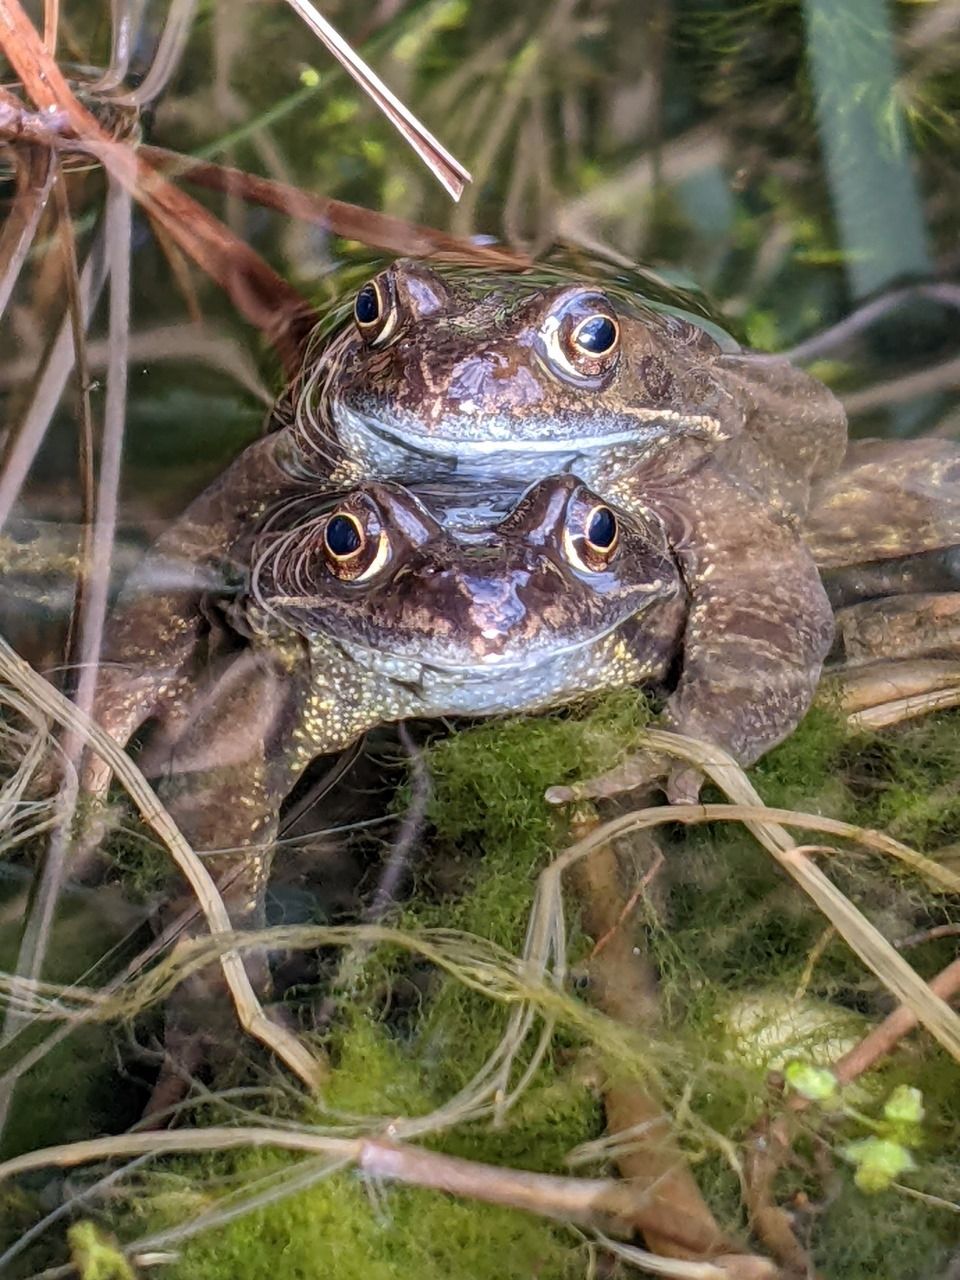 Friendly frogs